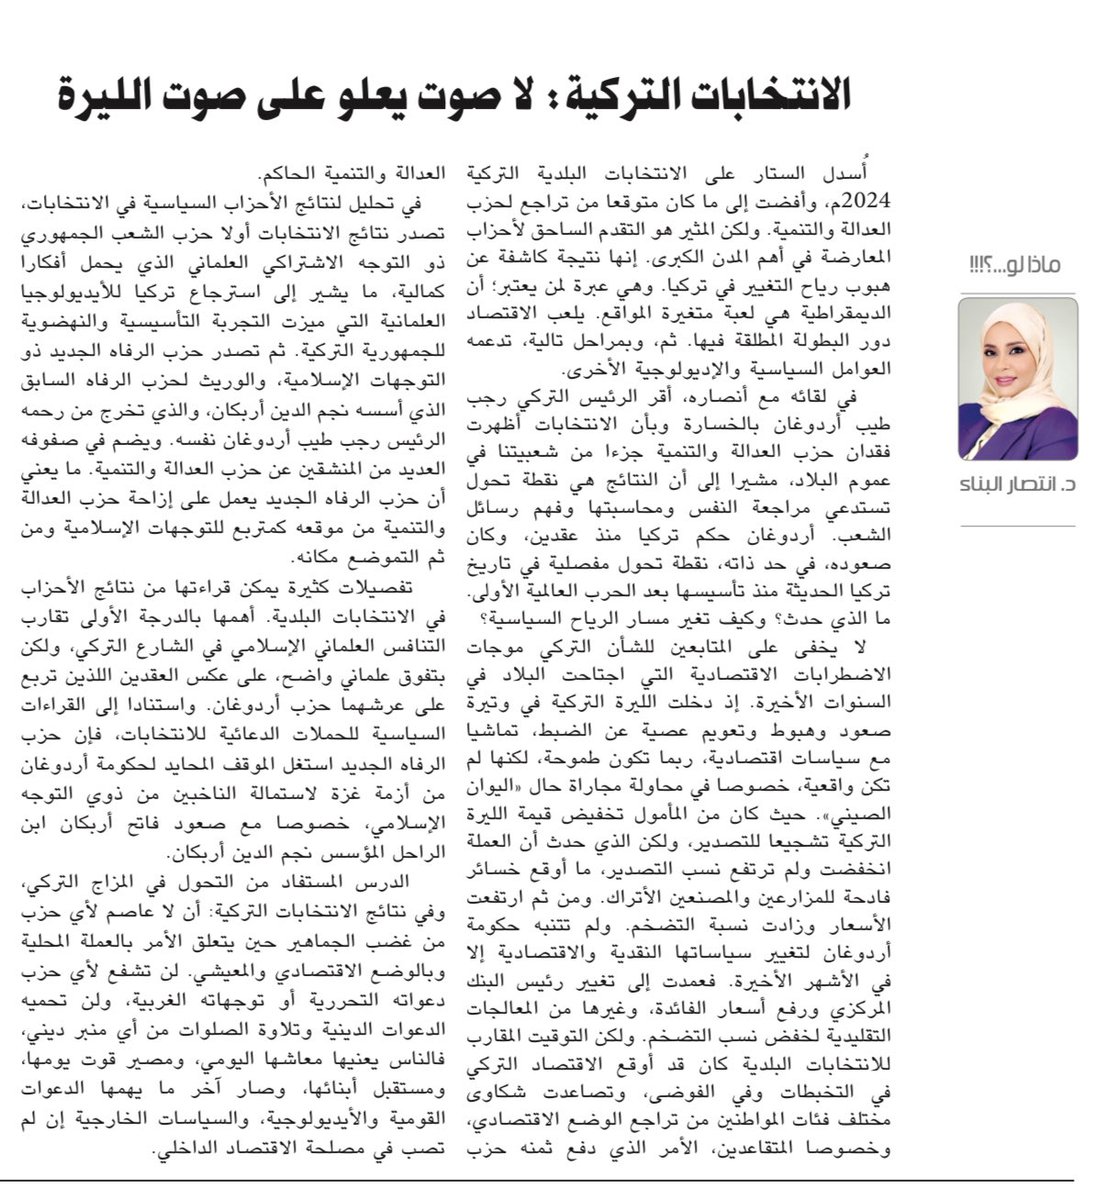 مقالي في صحيفة #الأيام #البحرين

الانتخابات التركية، لاصوت يعلو على صوت الليرة. 

#تركيا